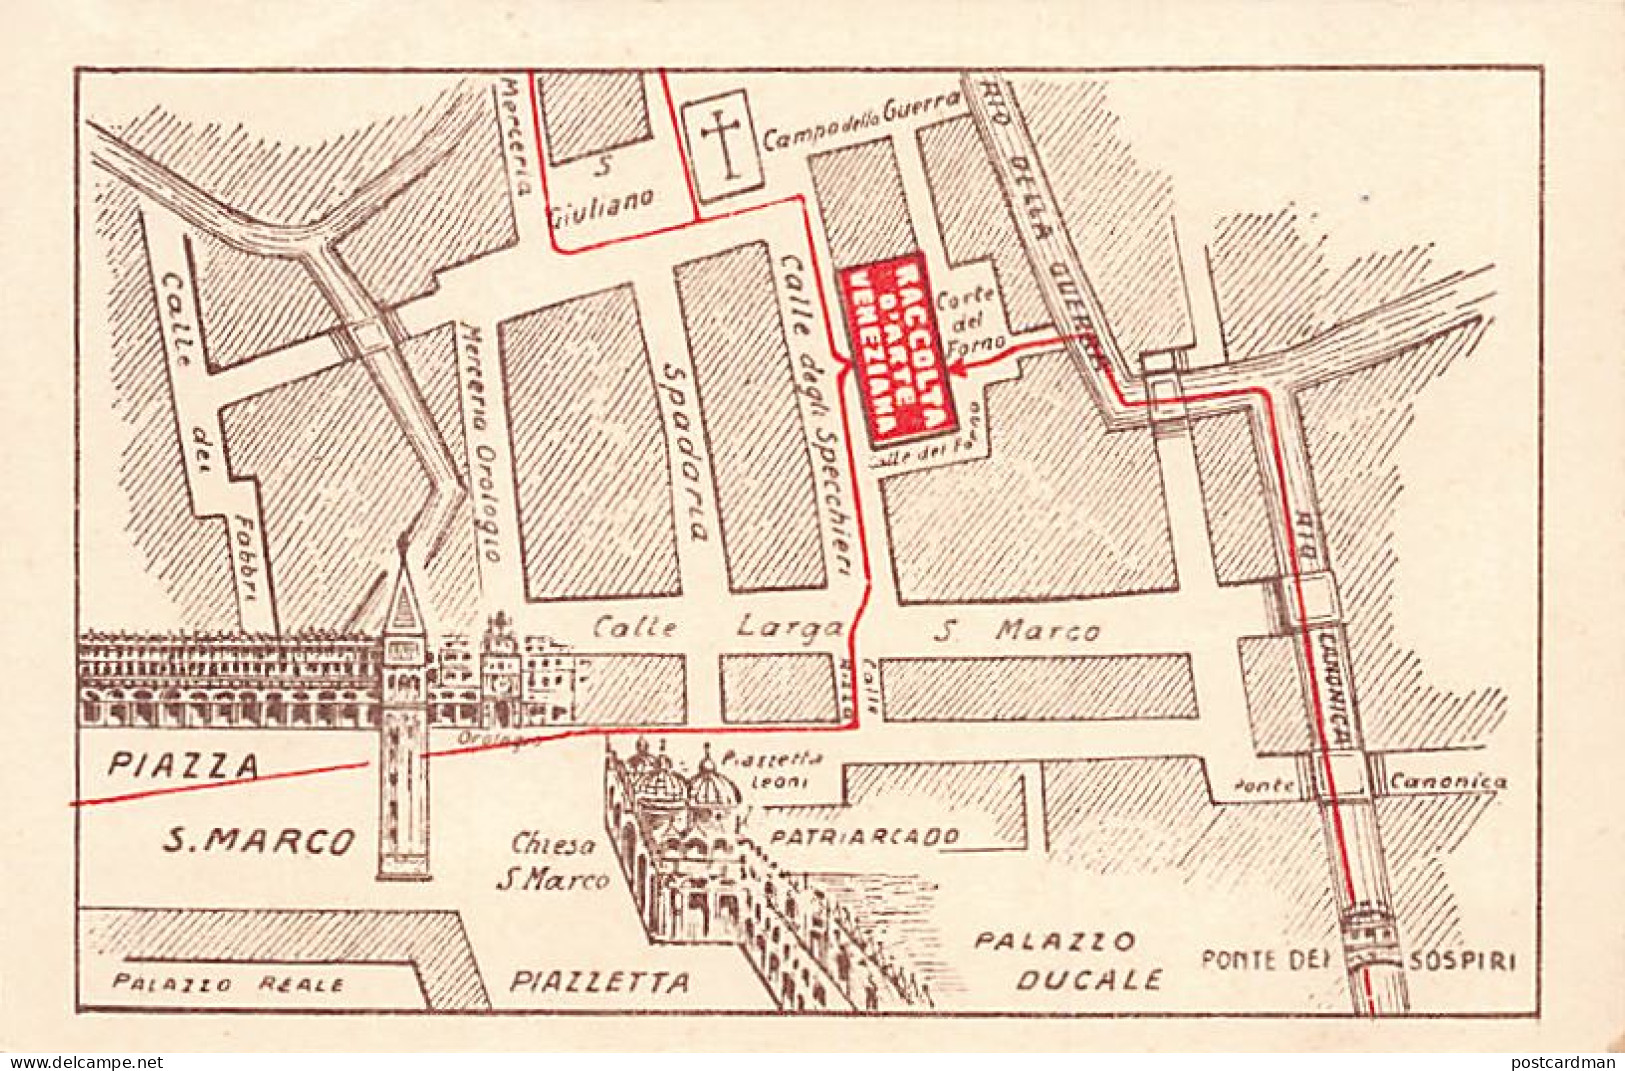 VENEZIA - G. Ferracuti - Lavorazione Del Vetro - S. Marco, Calle Dei Specchieri - Venetië (Venice)